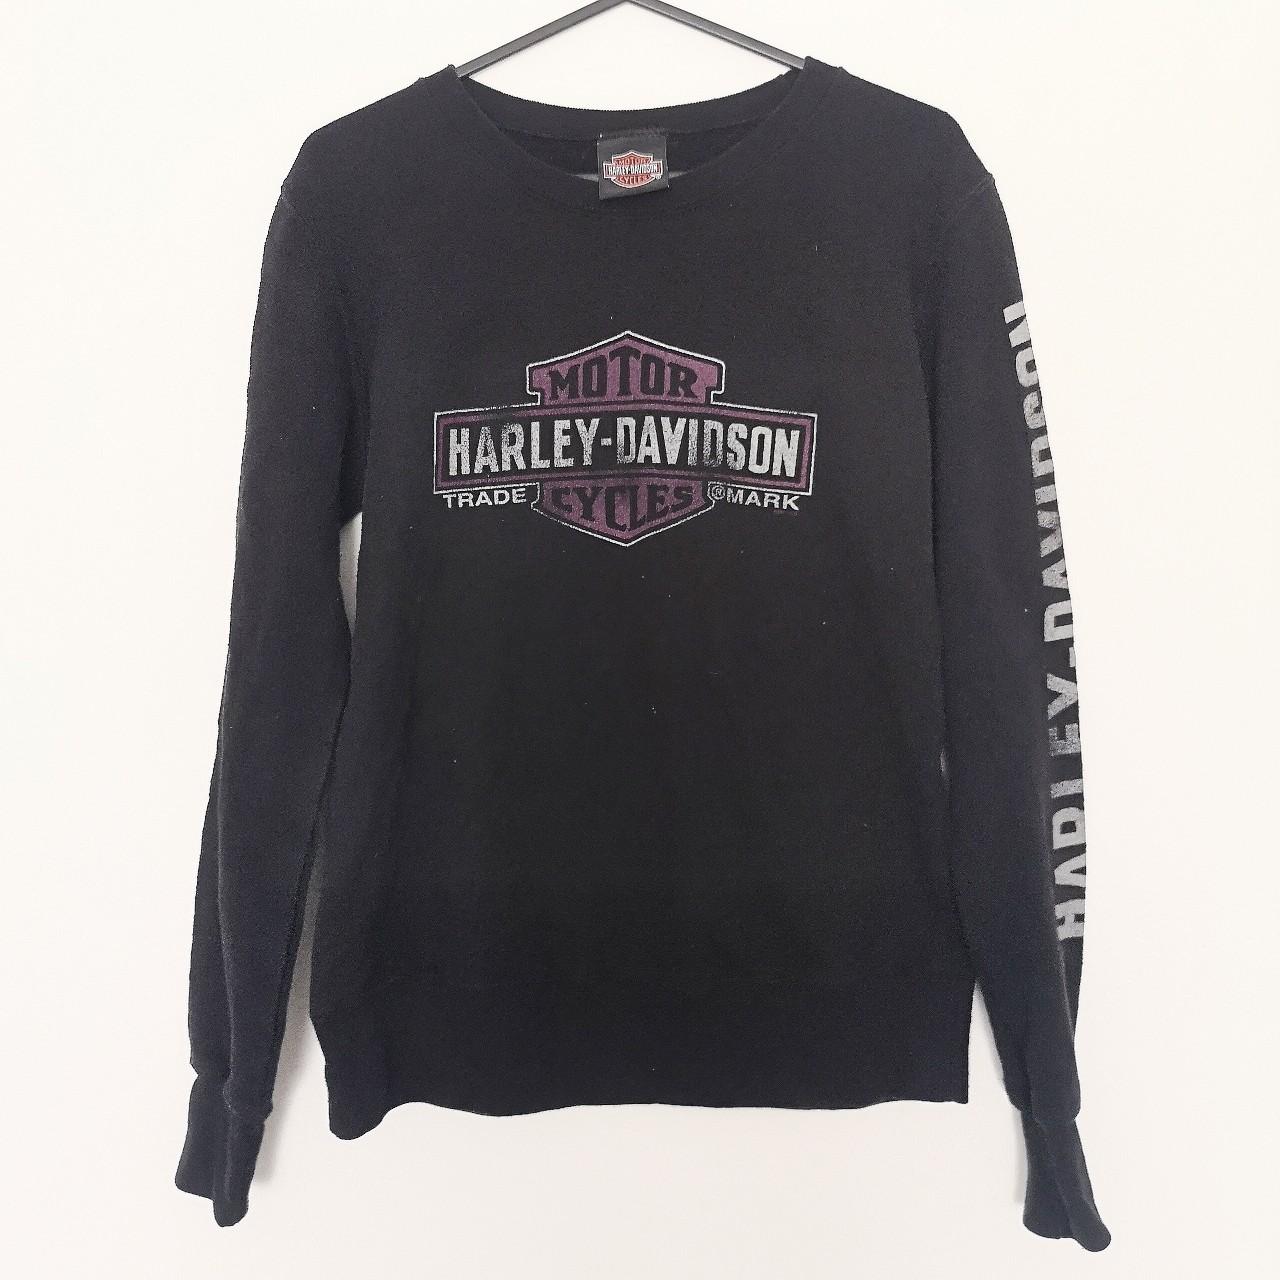 Vintage Harley Davidson jumper sweatshirt / size... - Depop